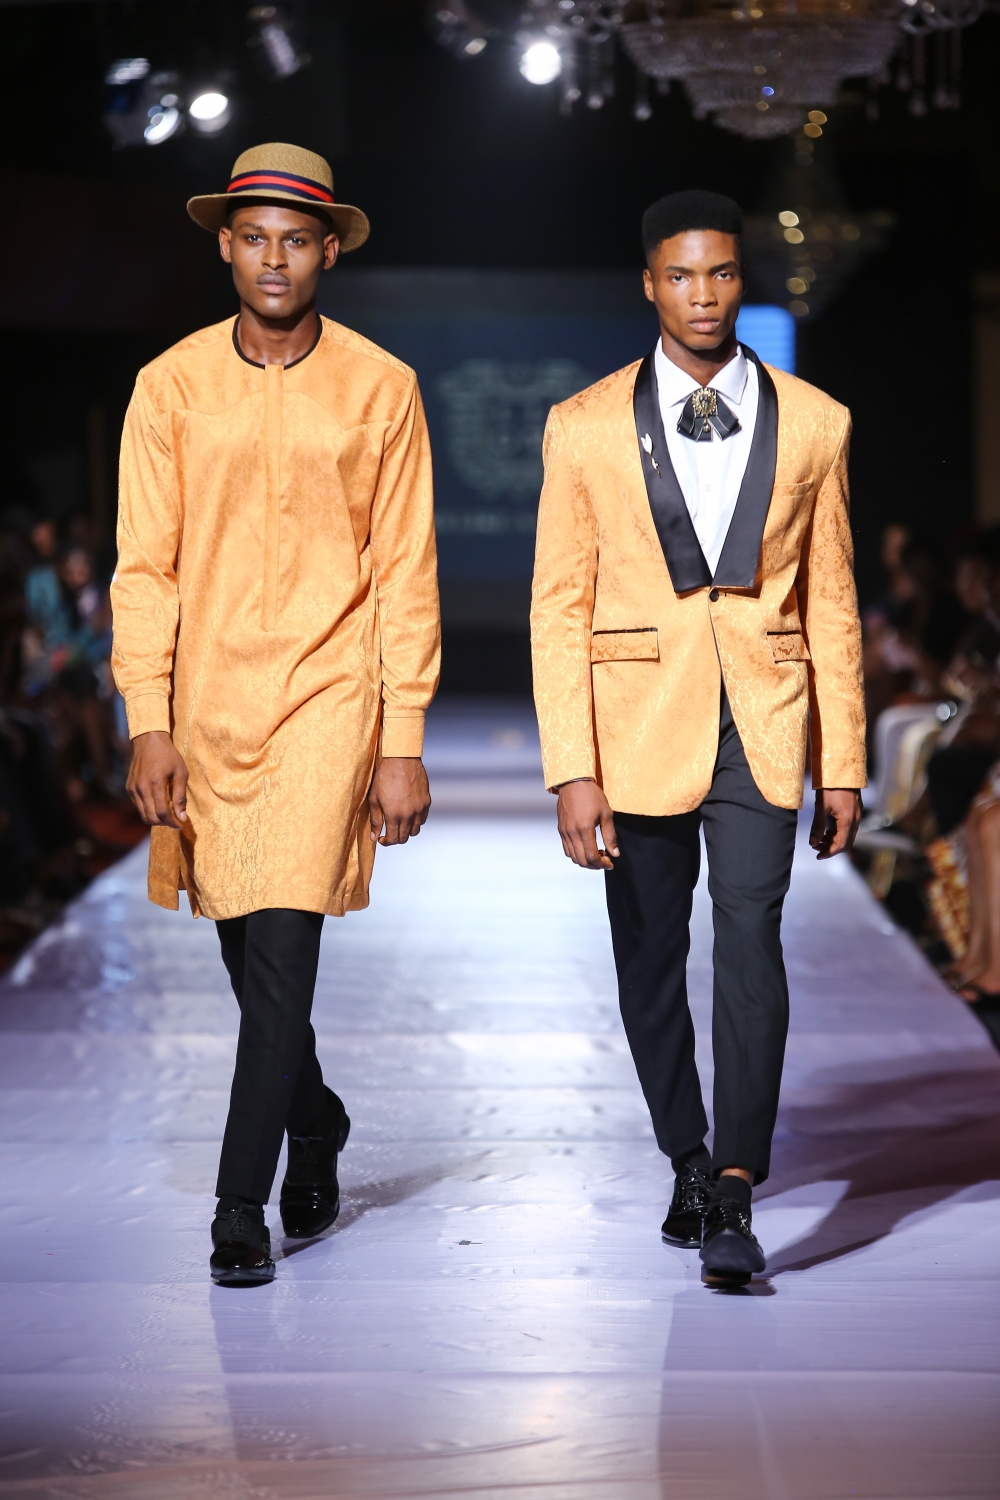 #AFWN17 | Africa Fashion Week Nigeria Day 1: LLGB